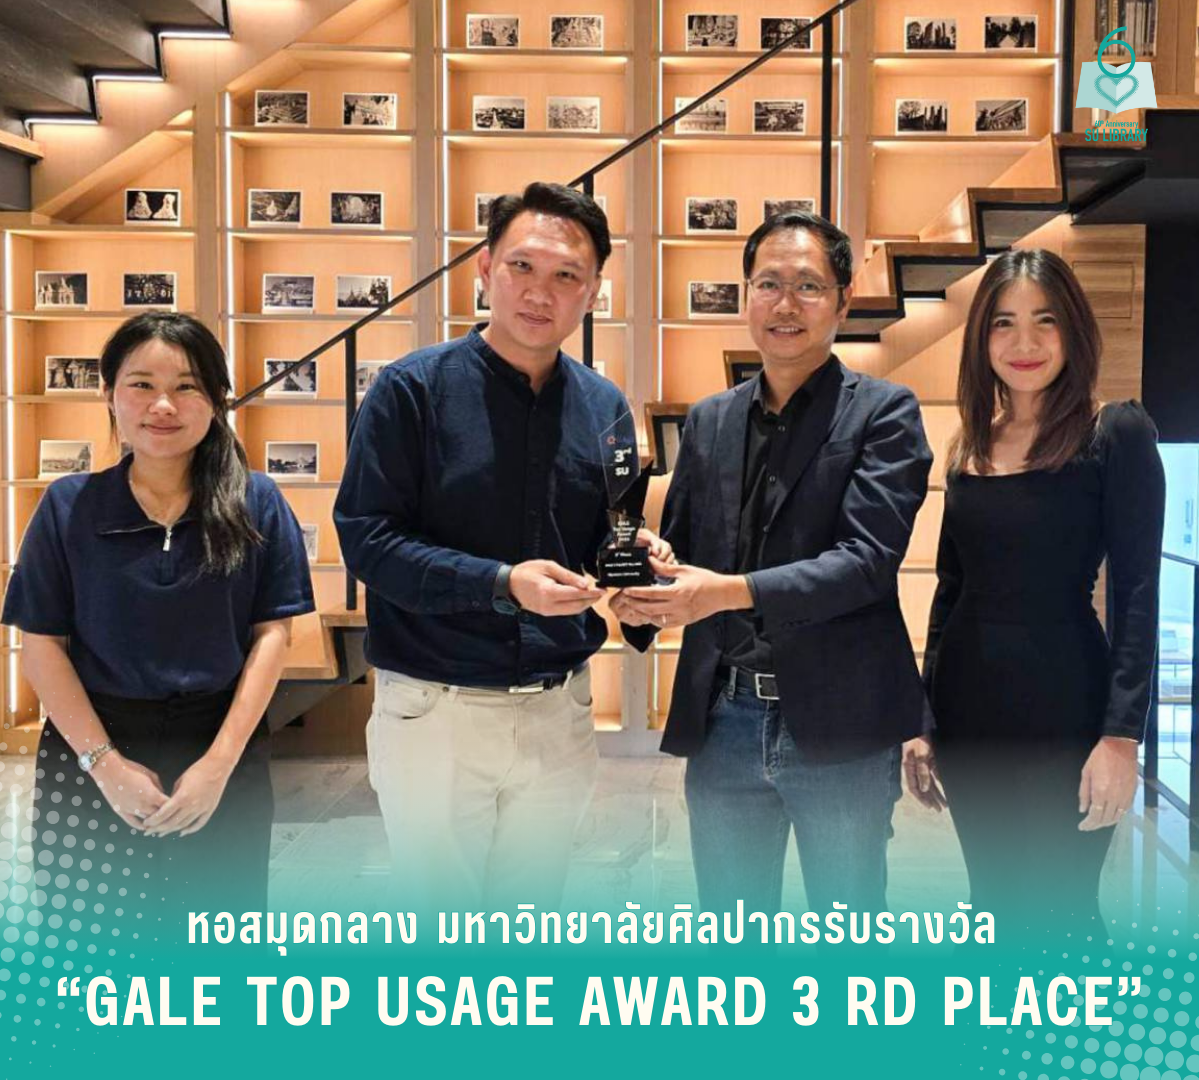 หอสมุดกลาง มหาวิทยาลัยศิลปากรรับรางวัล “Gale Top Usage Award 3rd Place”